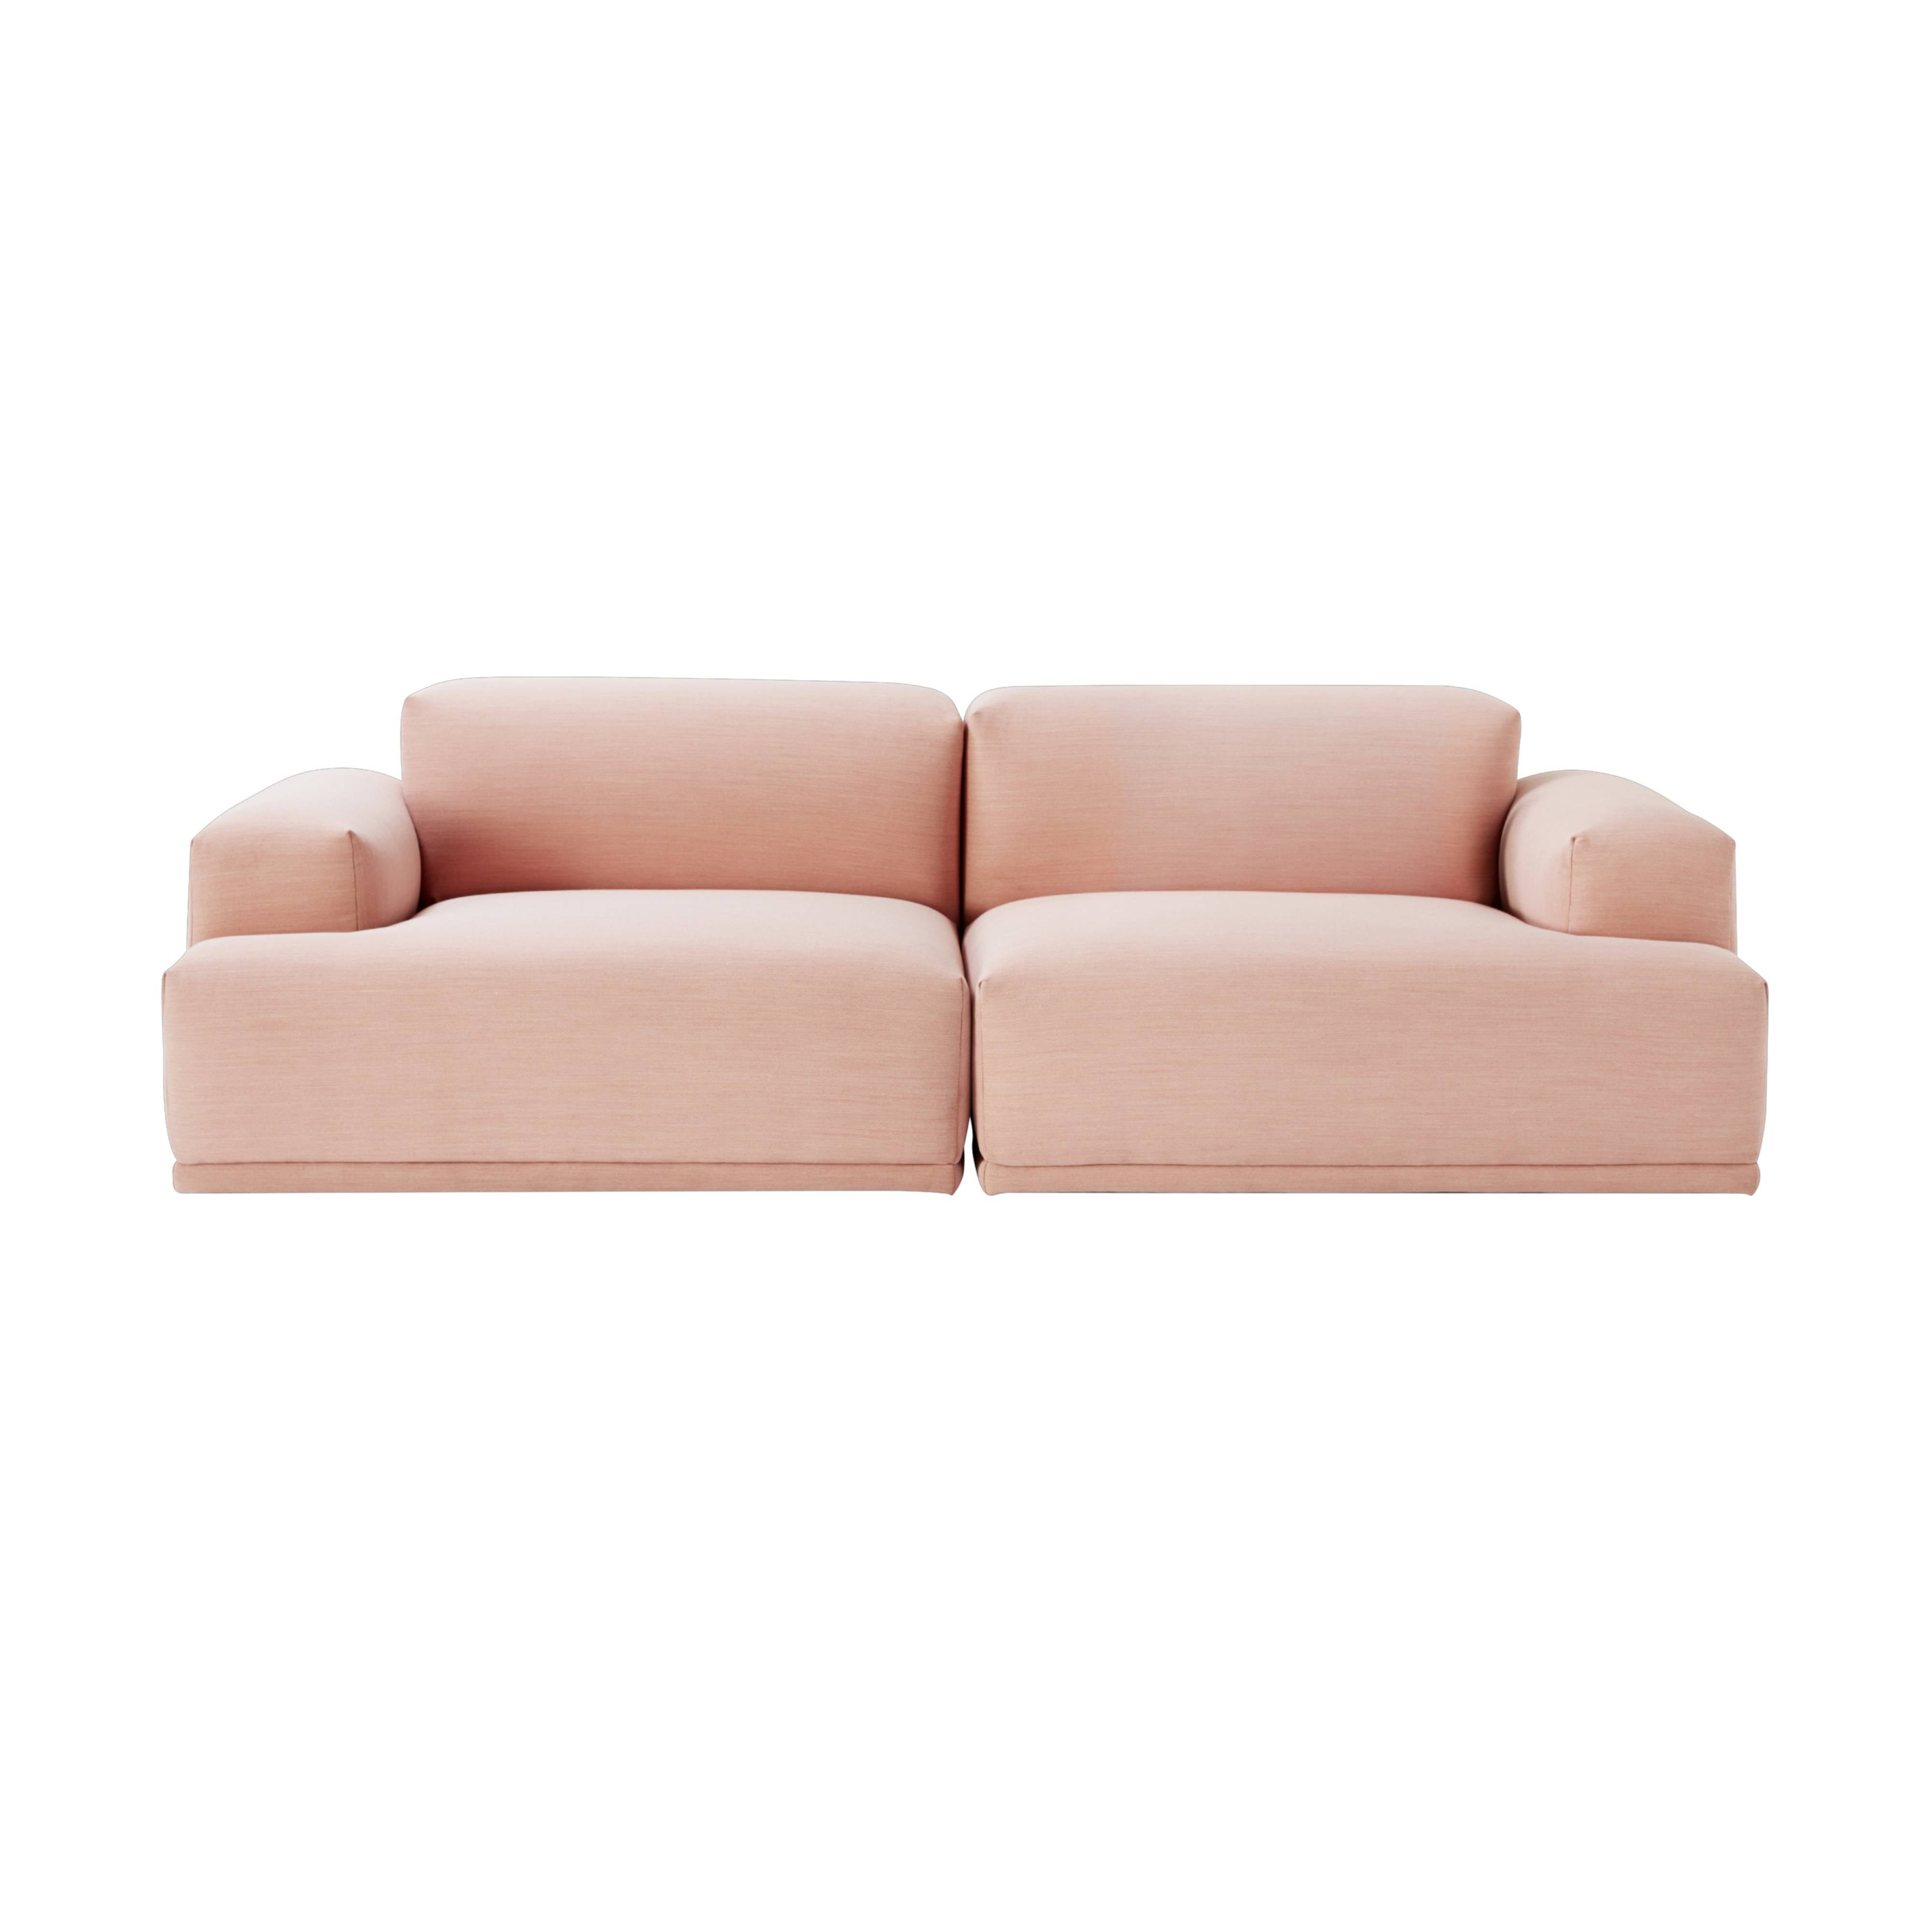 ik ben trots schuld Actief Connect Modular Sofa | Buy Muuto online at A+R